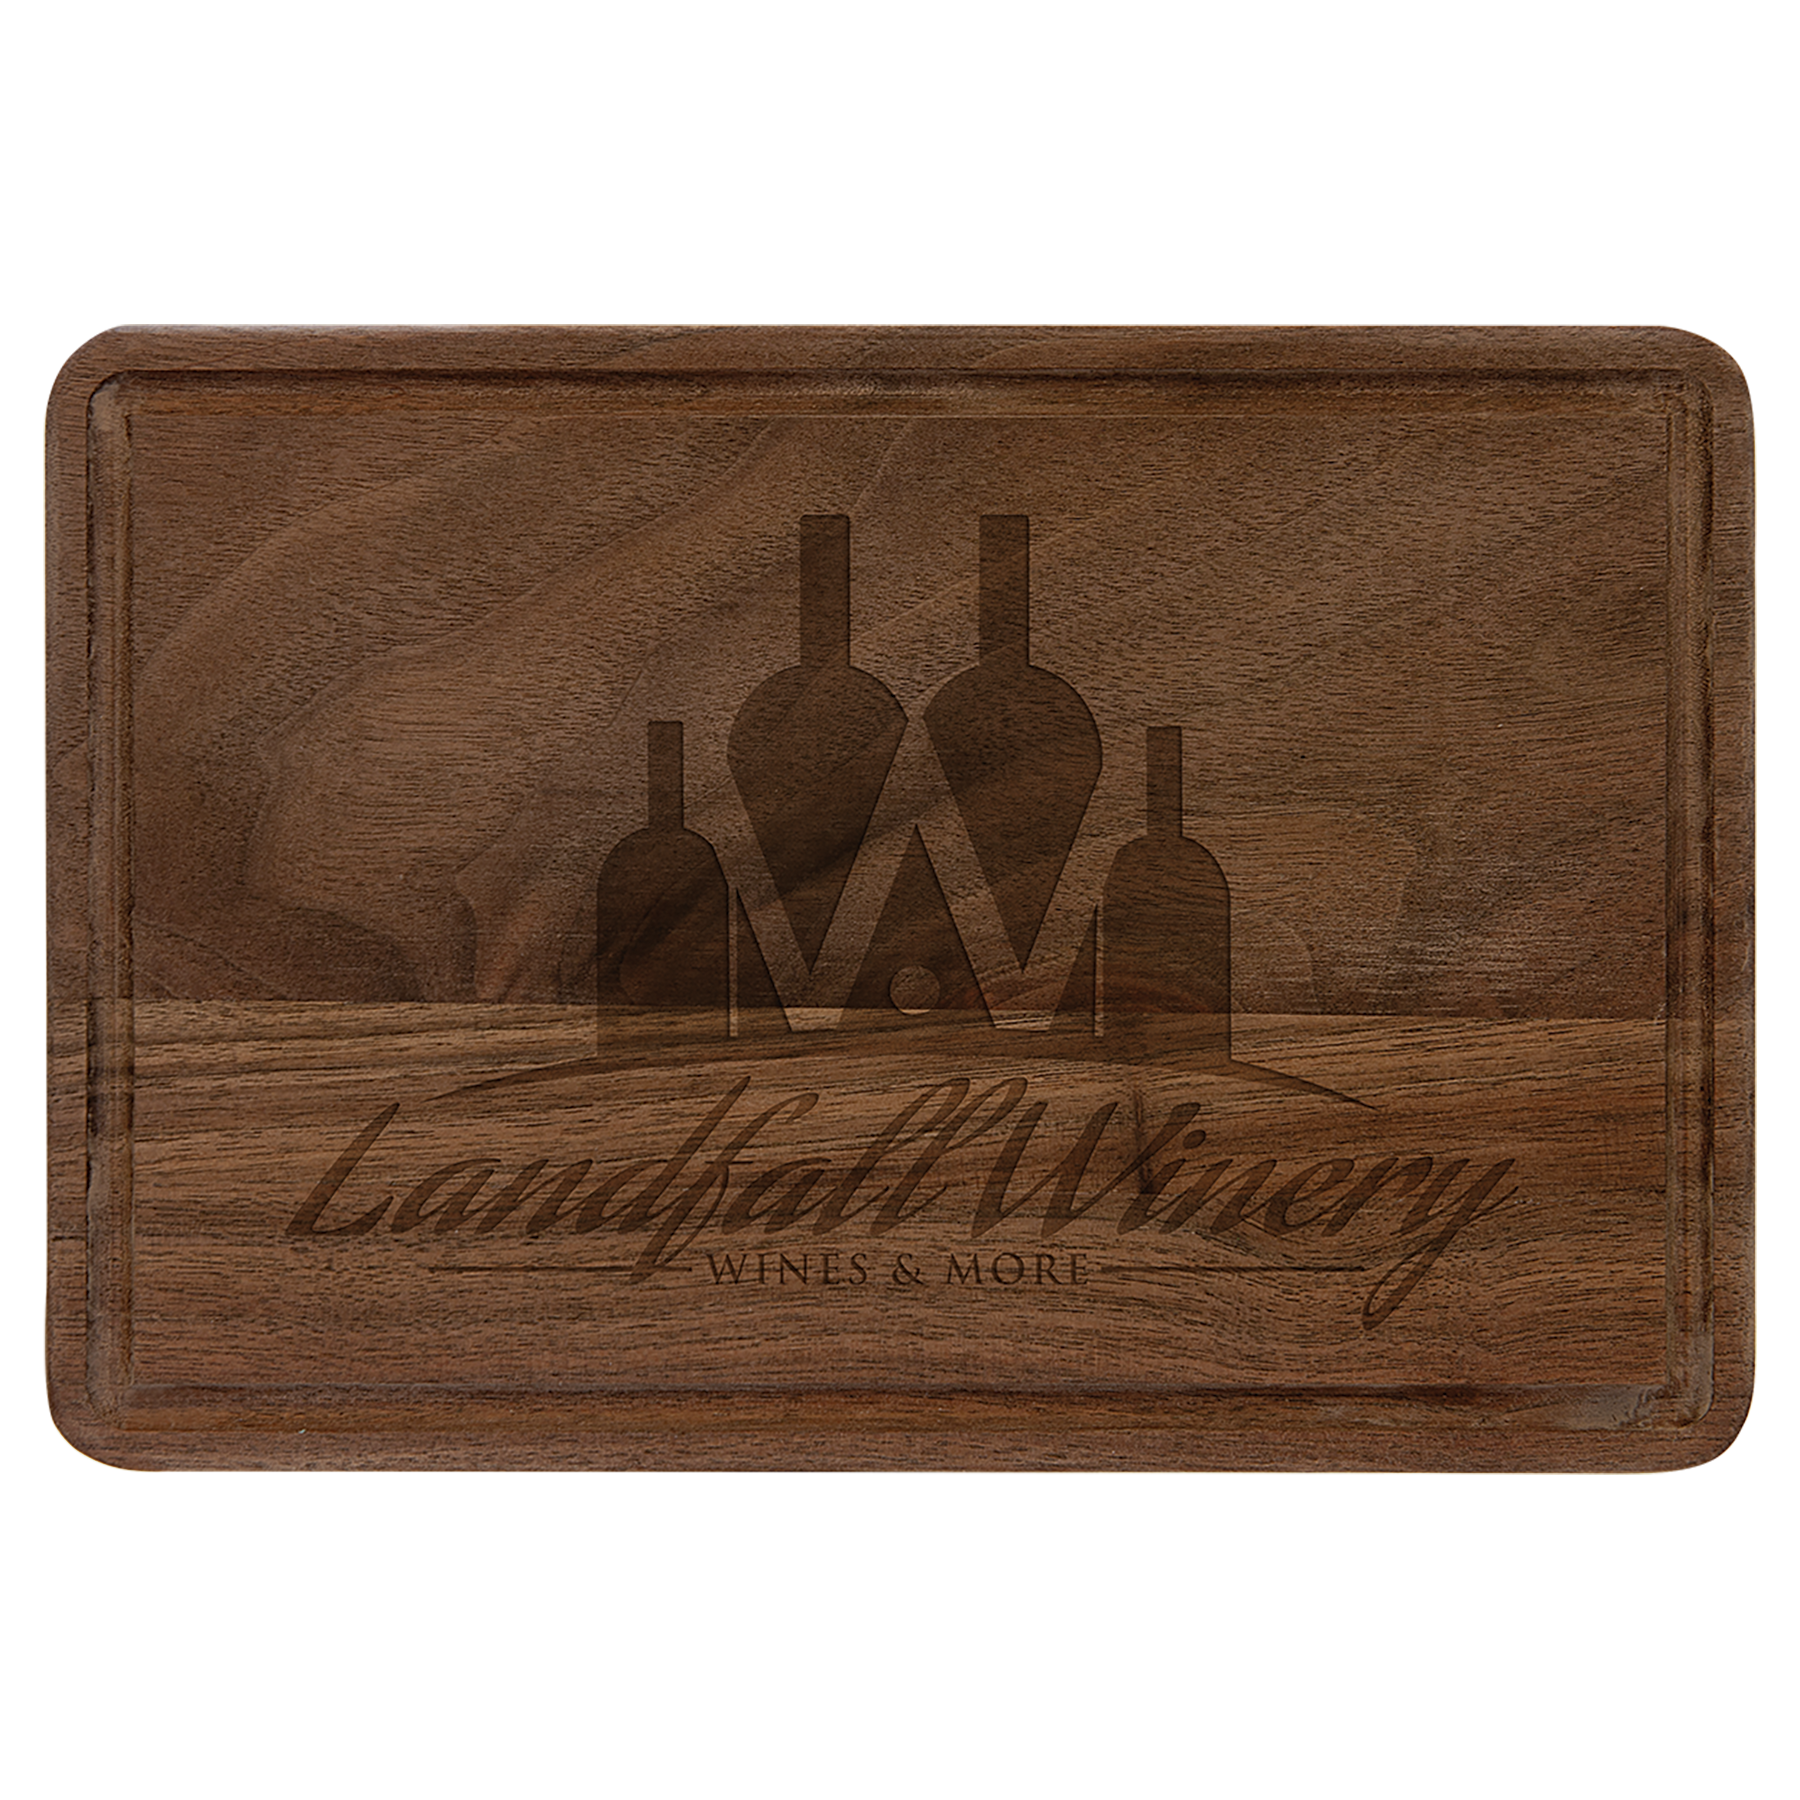 Walnut Cutting Board w/Drip Ring, 9" x 6", Laser Engraved - Craftworks NW, LLC